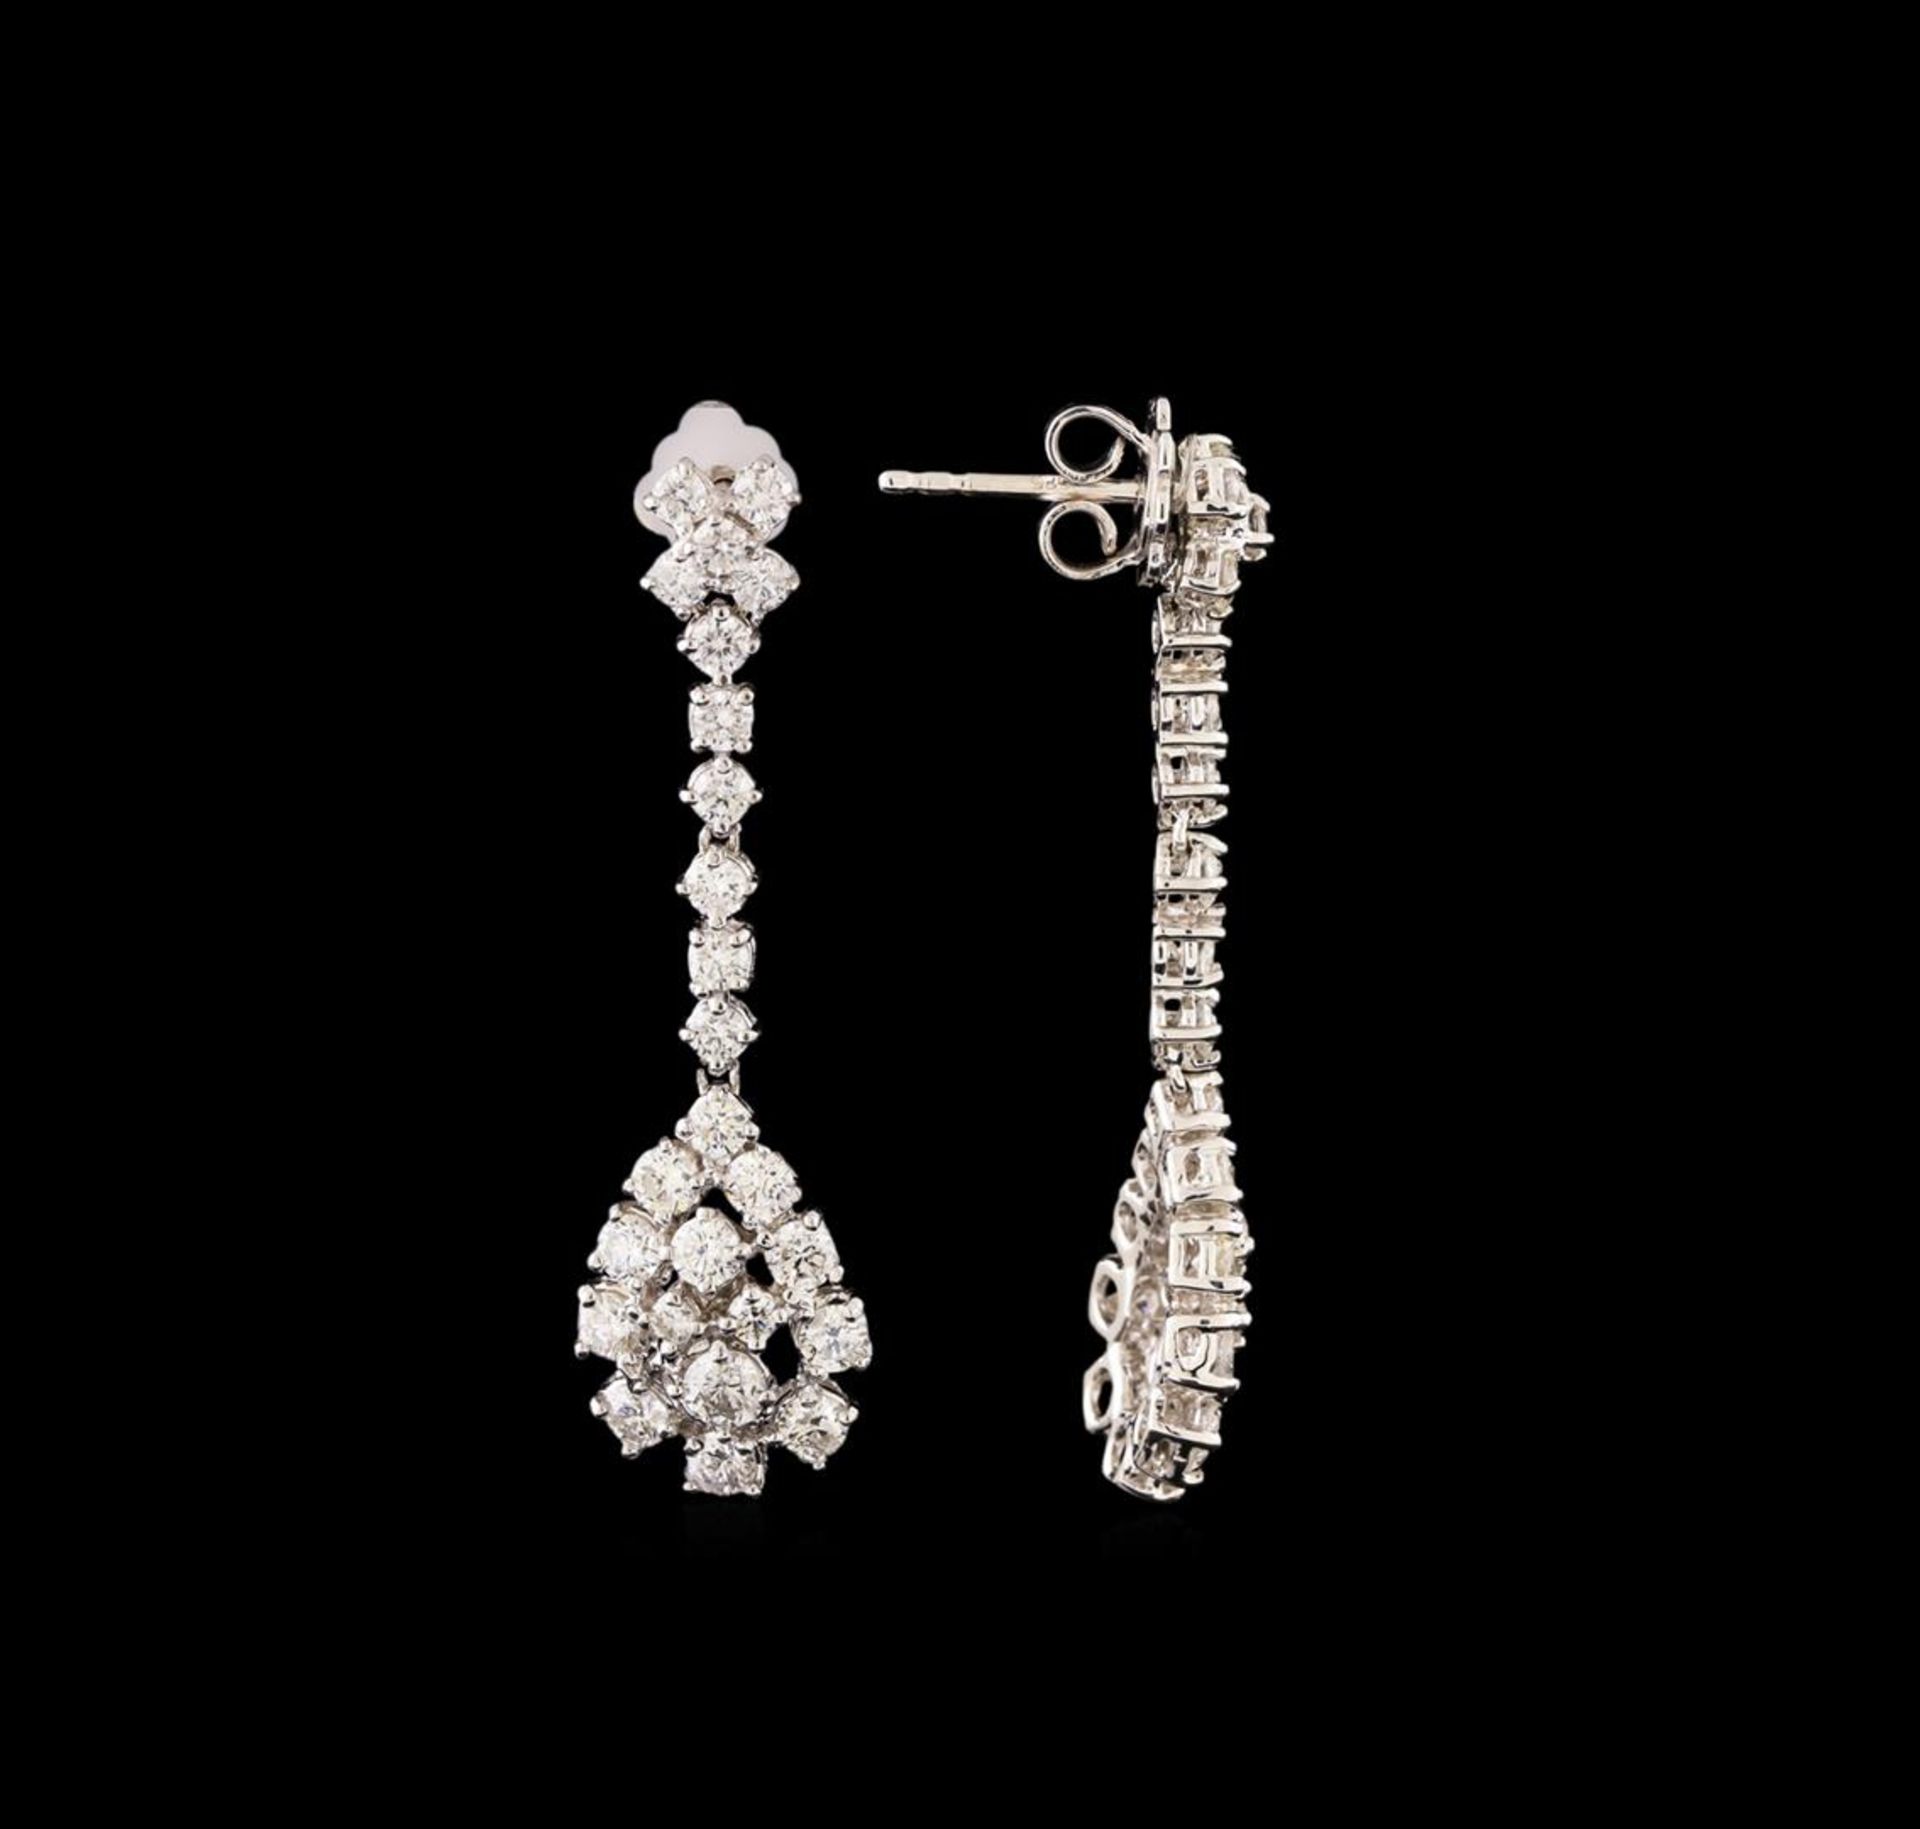 14KT White Gold 2.61 ctw Diamond Earrings - Image 2 of 3